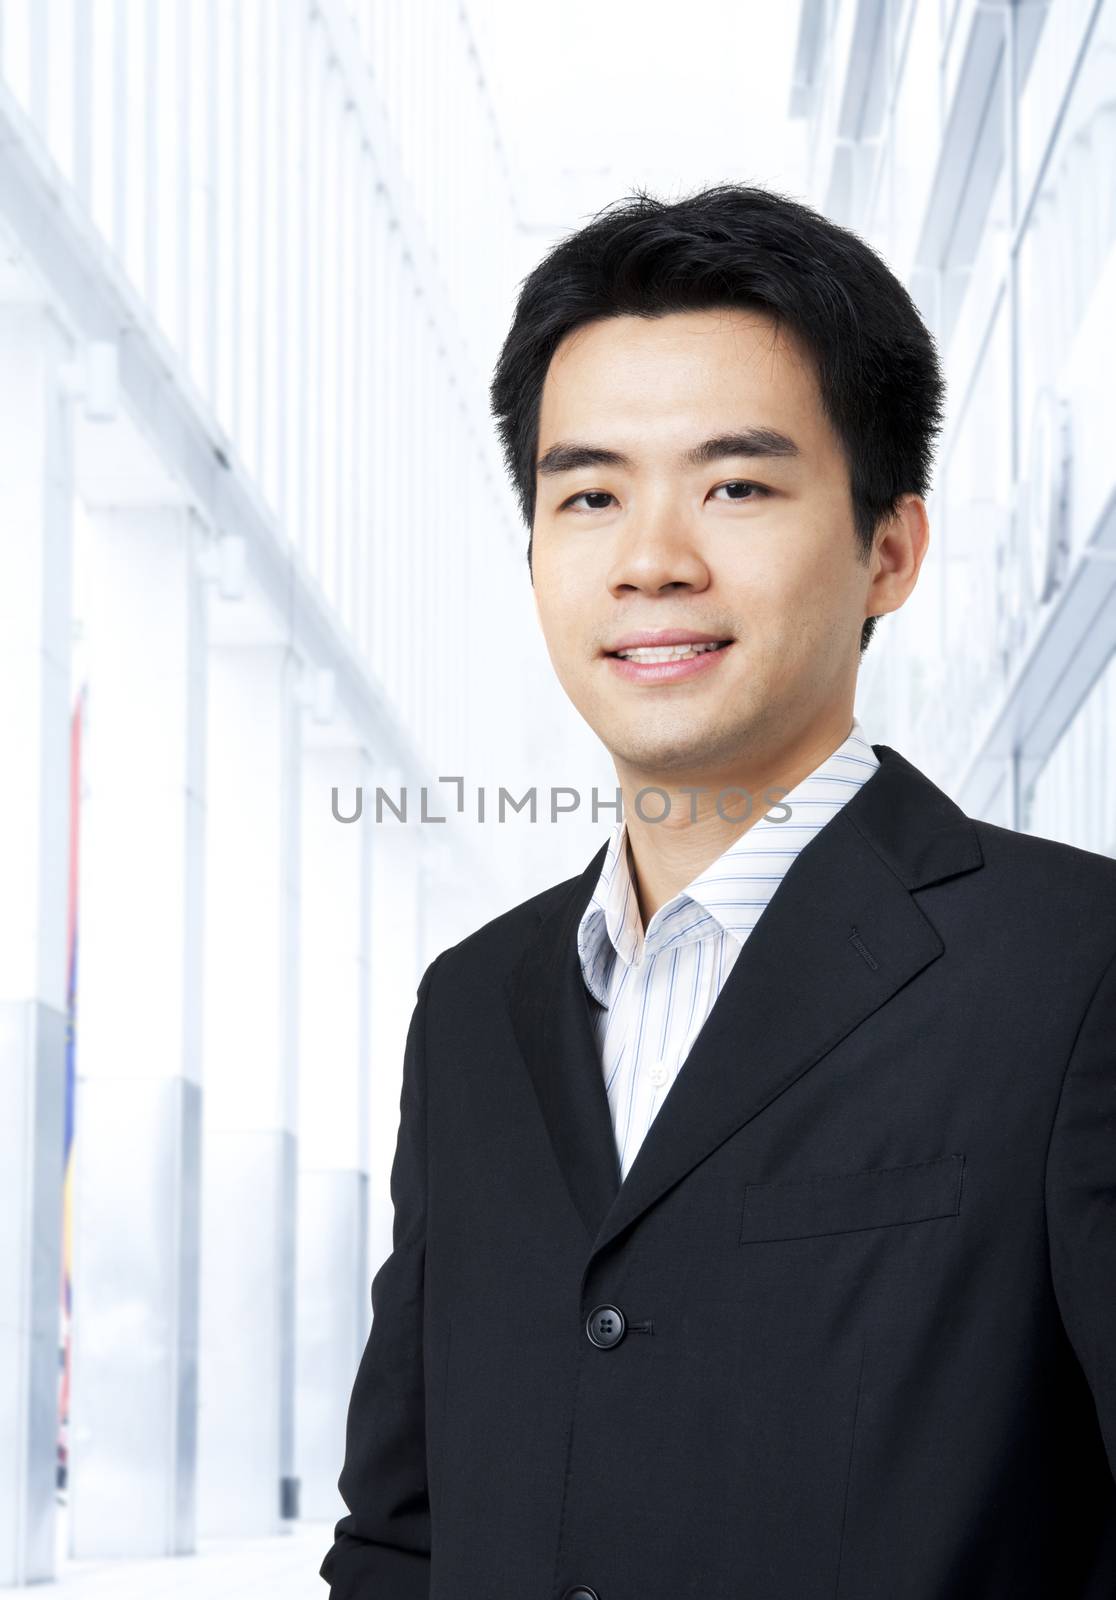 Portrait of Asian business people by szefei